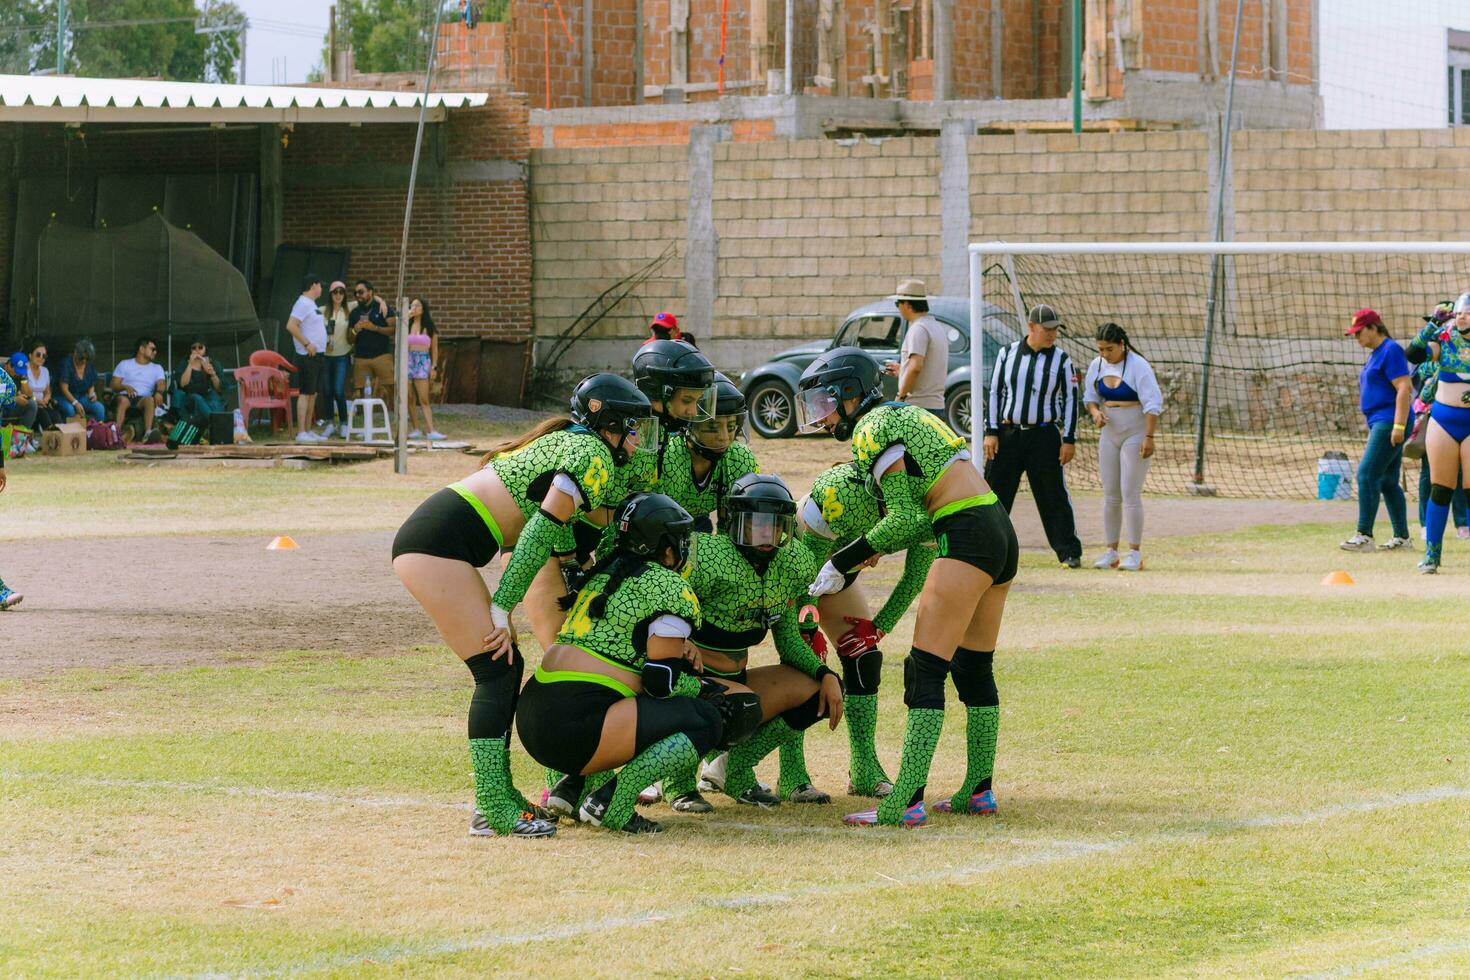 puebla, mexico 2023 - simpático juego de De las mujeres americano fútbol americano en mexico en un plano campo en un soleado día foto